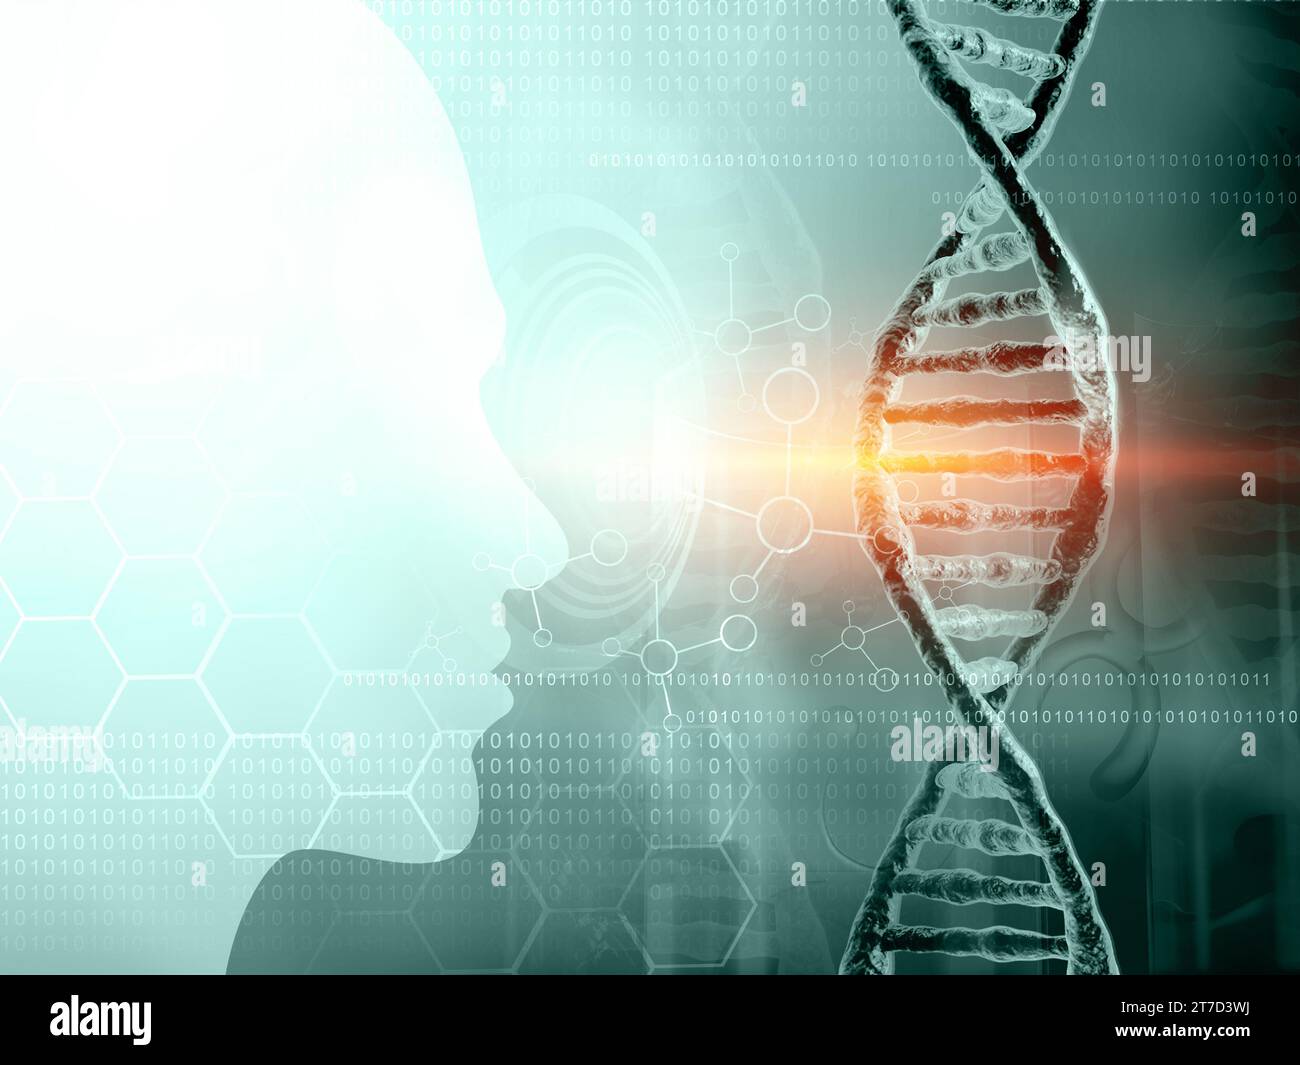 Molecola di DNA umano. Studi sul genoma umano , contesto biochimico. illustrazione 3d. Foto Stock